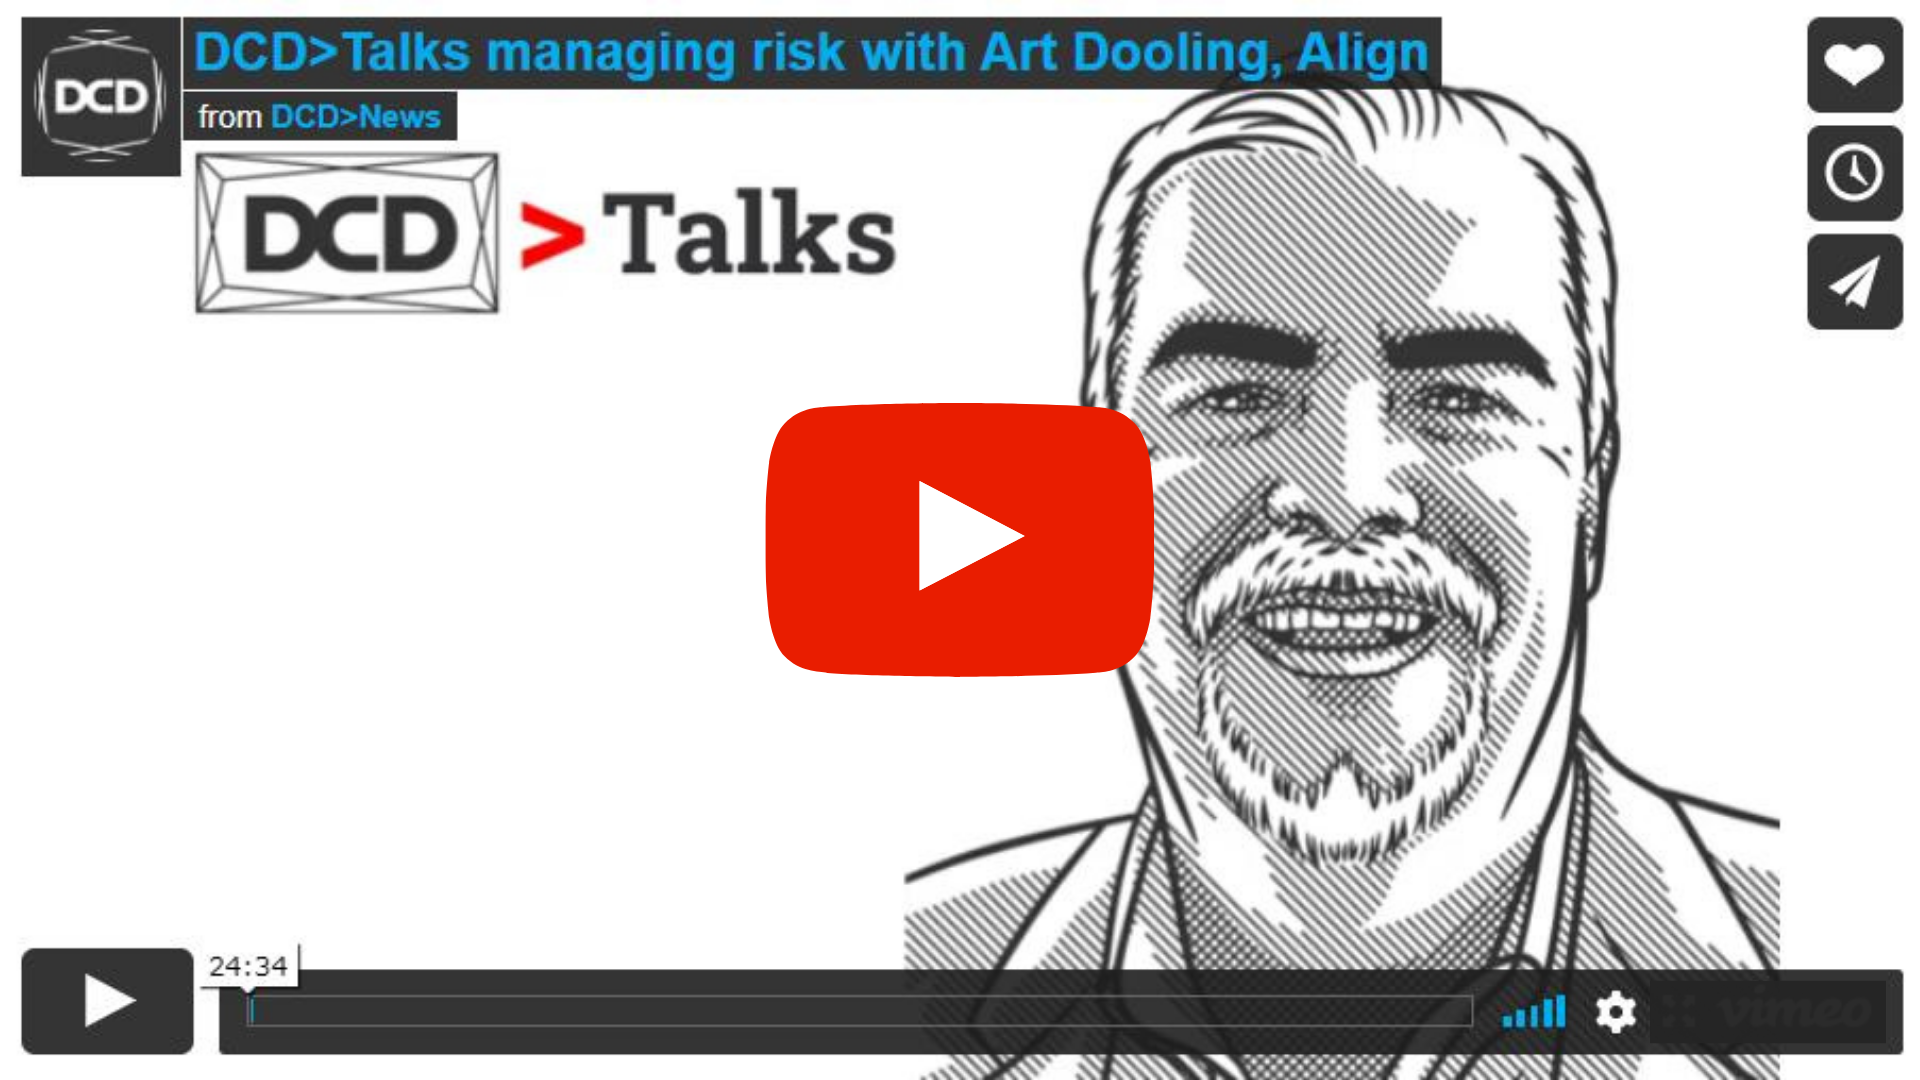 Video: DCD>Talks Managing Risk with Align's Art Dooling